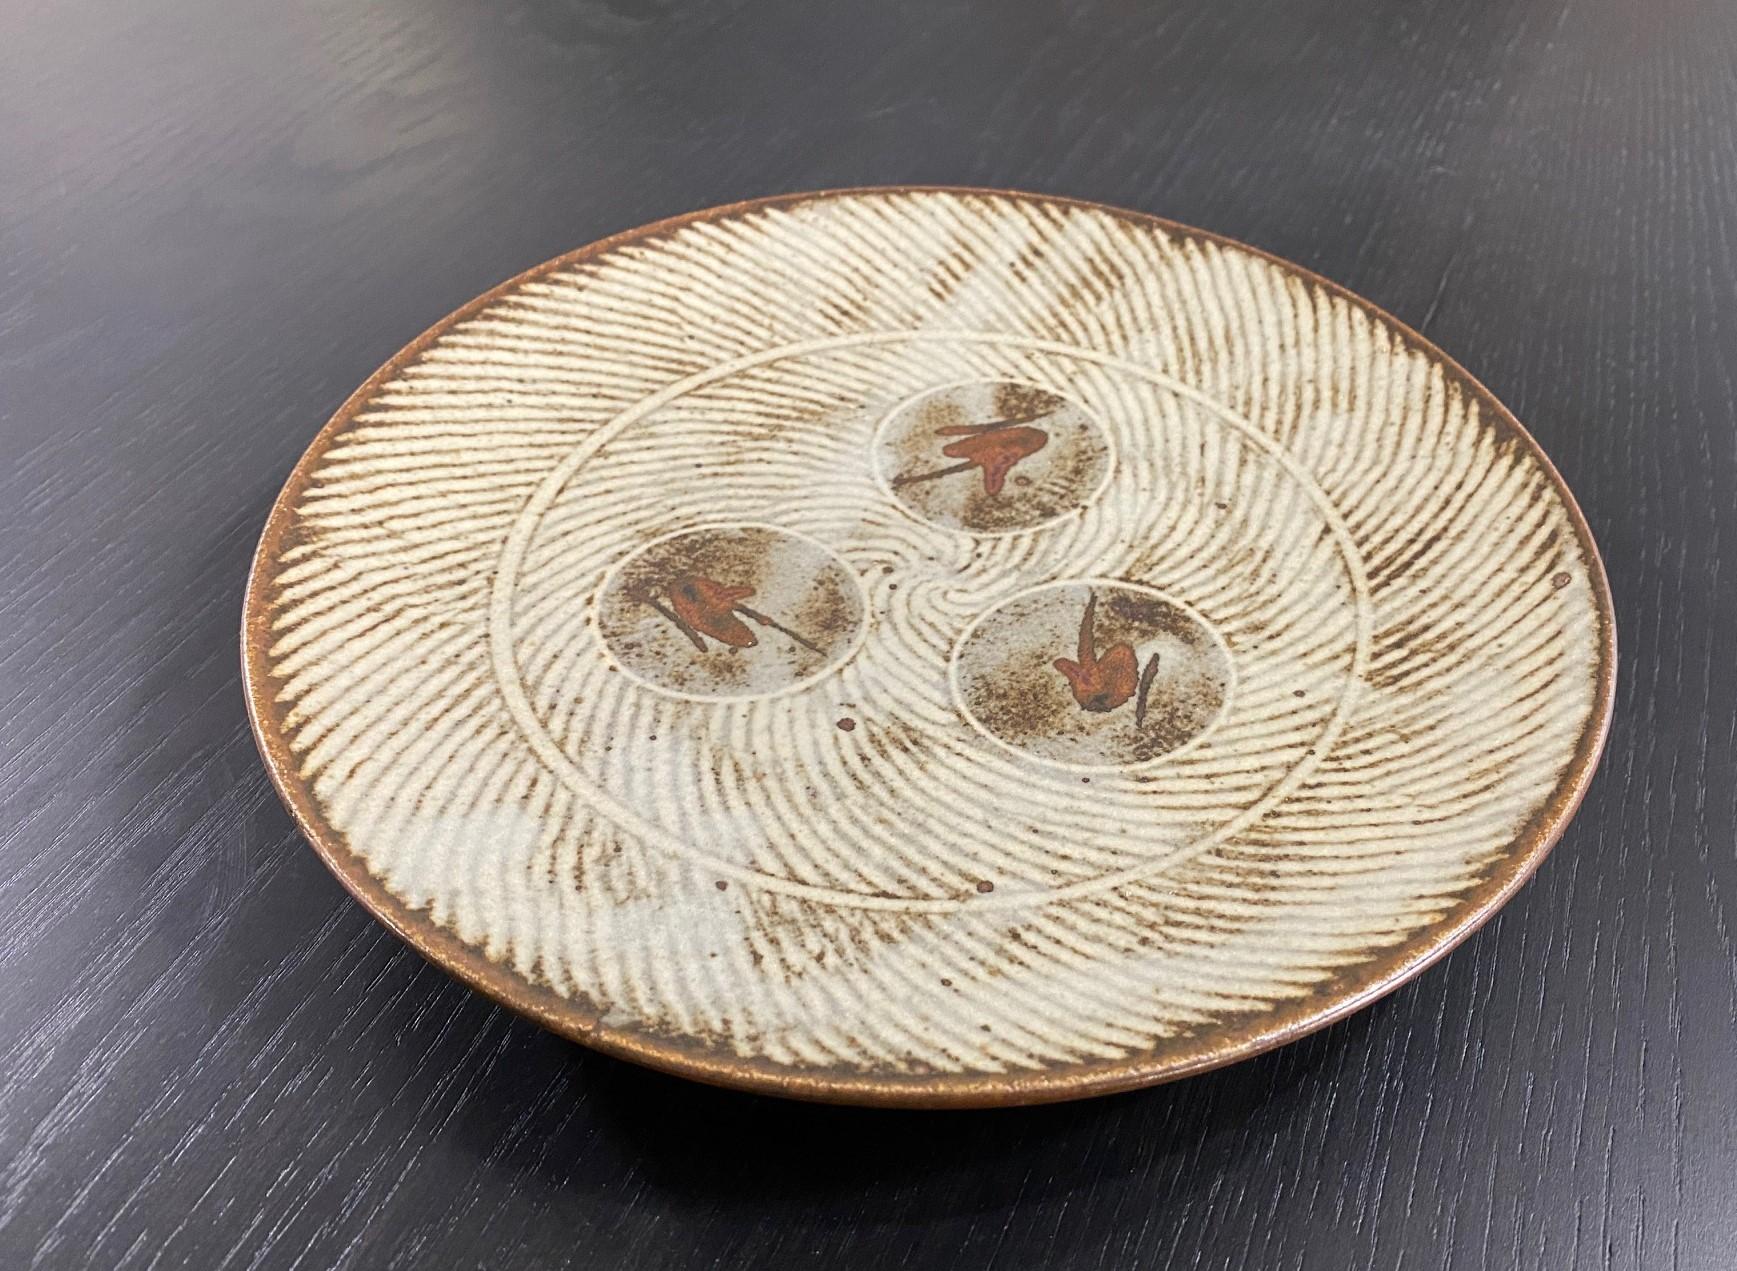 Assiette/bol bas en céramique émaillée Mingei magnifiquement décorée et exécutée par le trésor national japonais et le maître de la poterie de Mashiko, Tatsuzo Shimaoka. Cette œuvre présente sa célèbre incrustation de corde Jomon Zogan, une